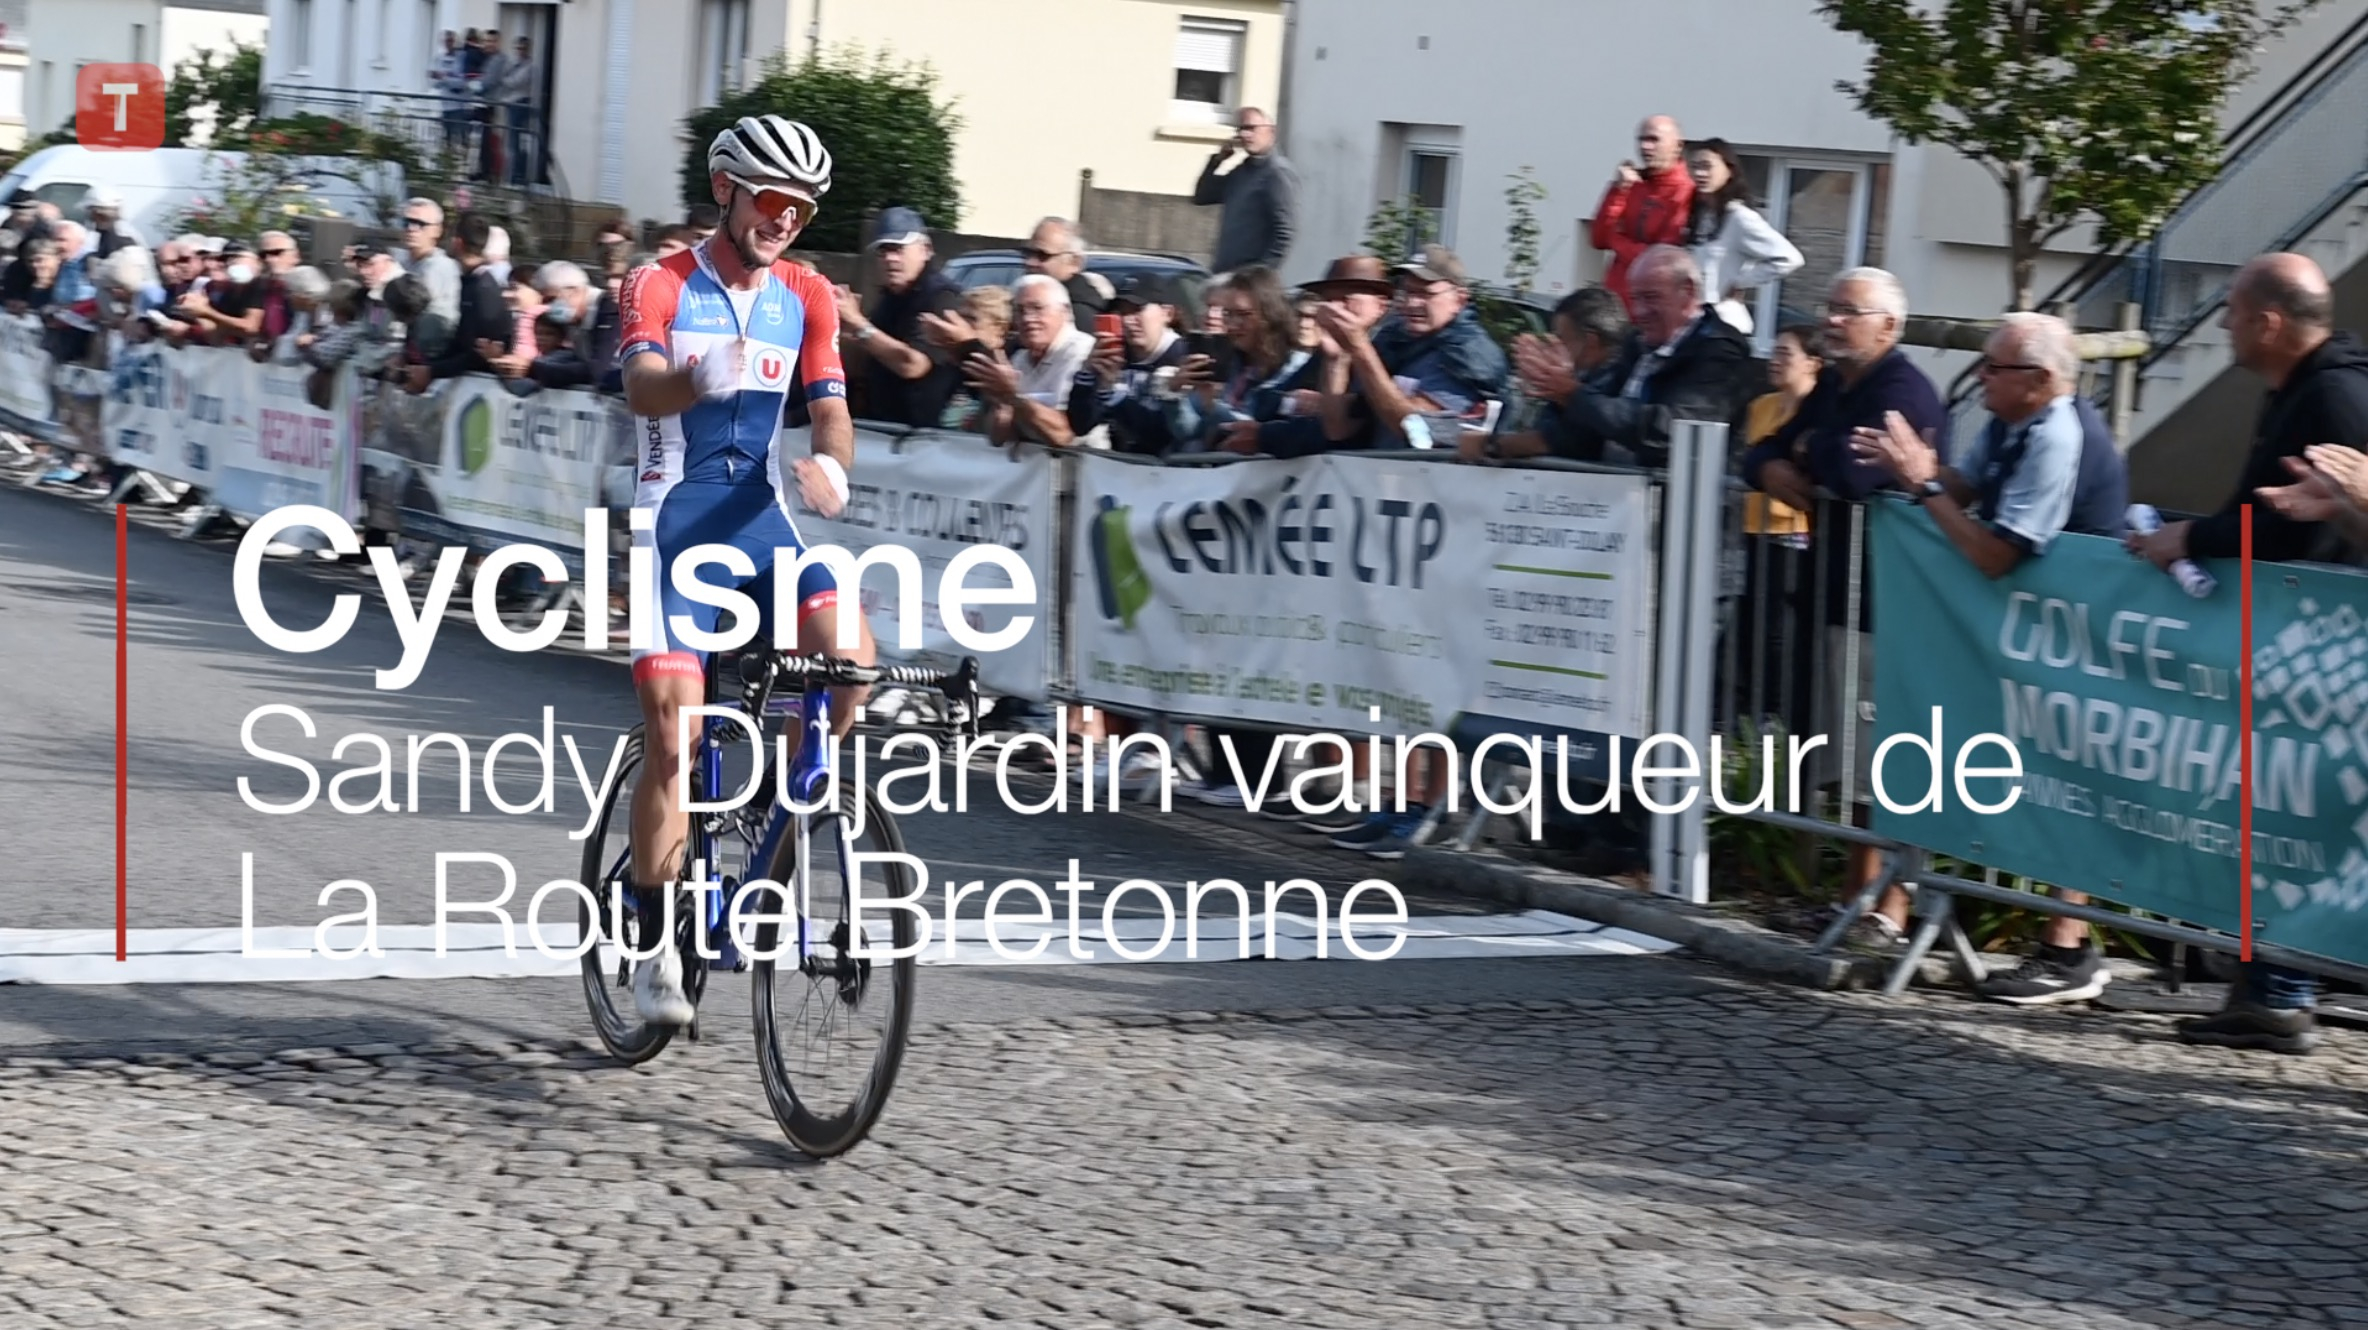 Cyclisme. Sandy Dujardin vainqueur de La Route Bretonne (Le Télégramme)